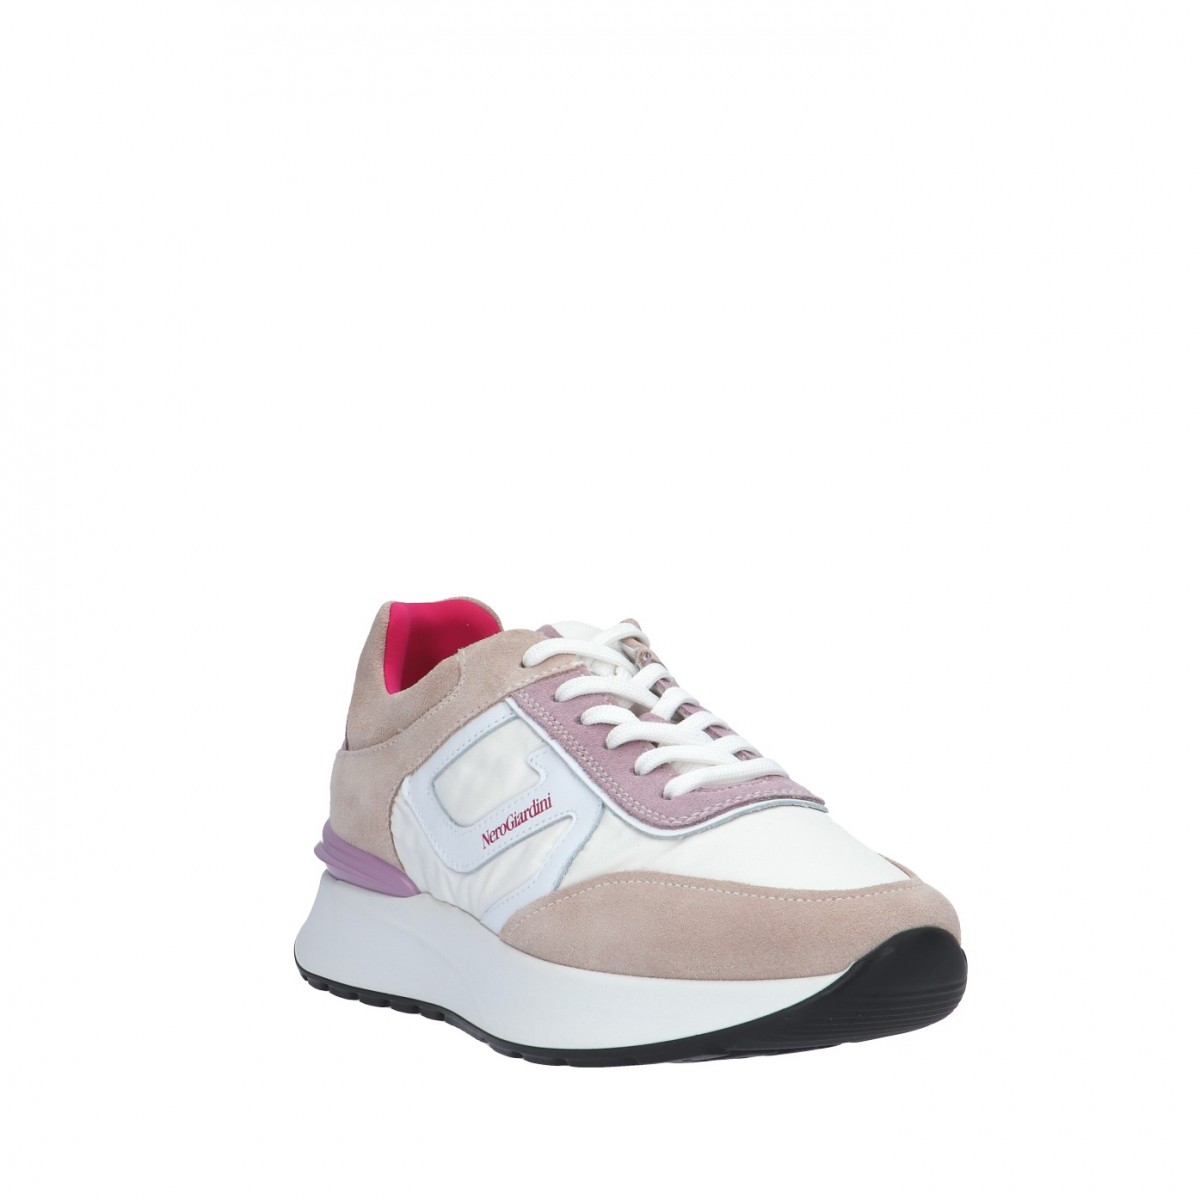 Nerogiardini Sneaker Bianco/lilla Gomma E306443D